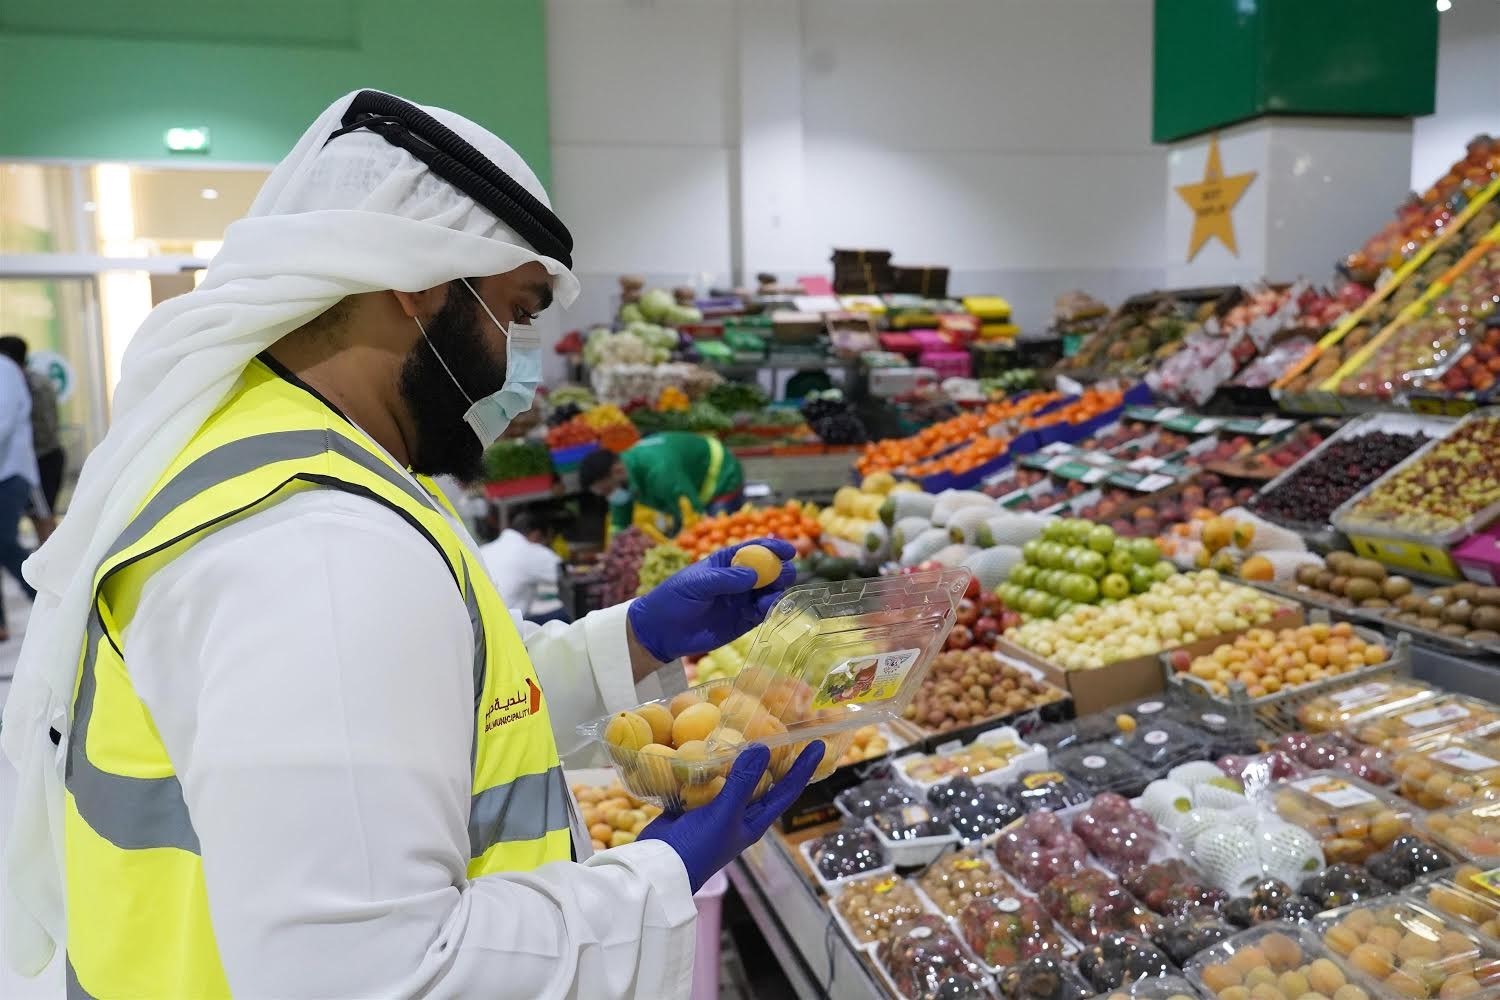 المملكة السعودية تضع عددا من الضوابط على الأغذية المباعة الكترونيا